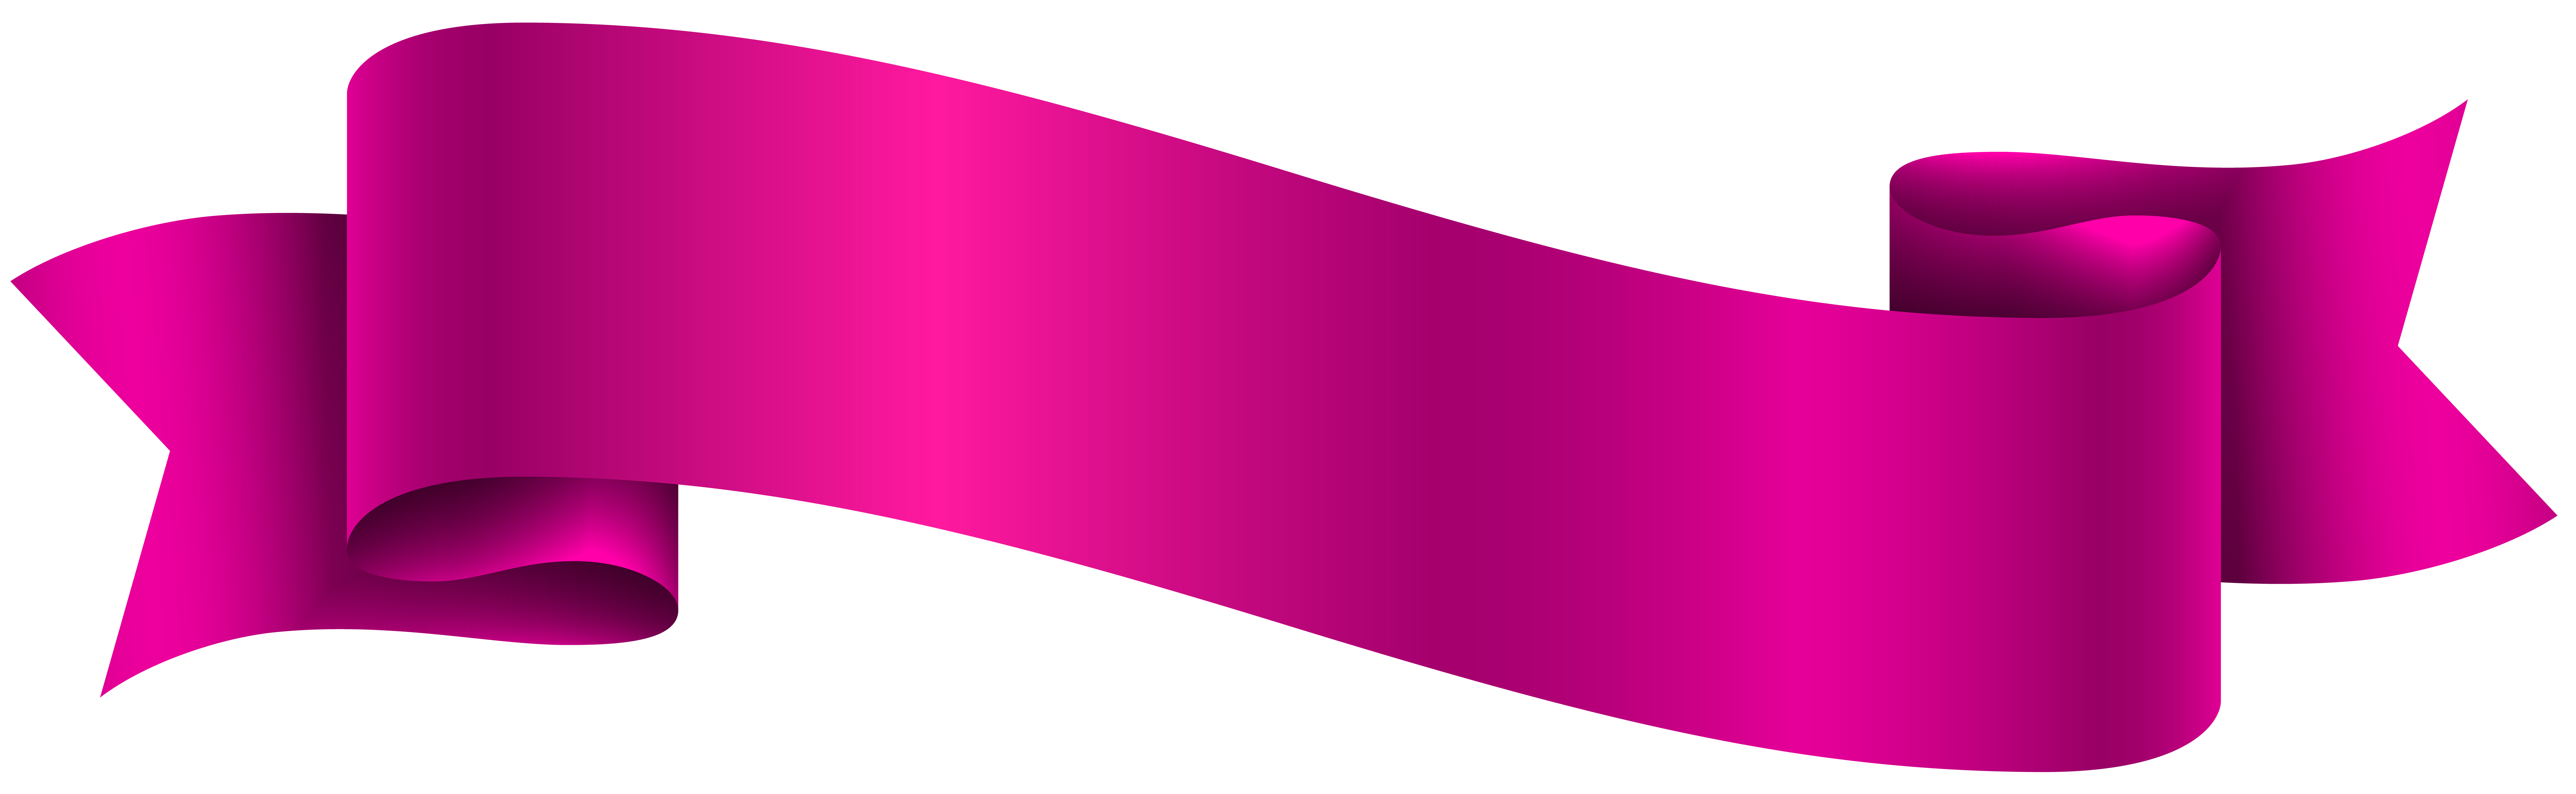 Gaya Terbaru 59 Pink Banner Template - Bank2home.com